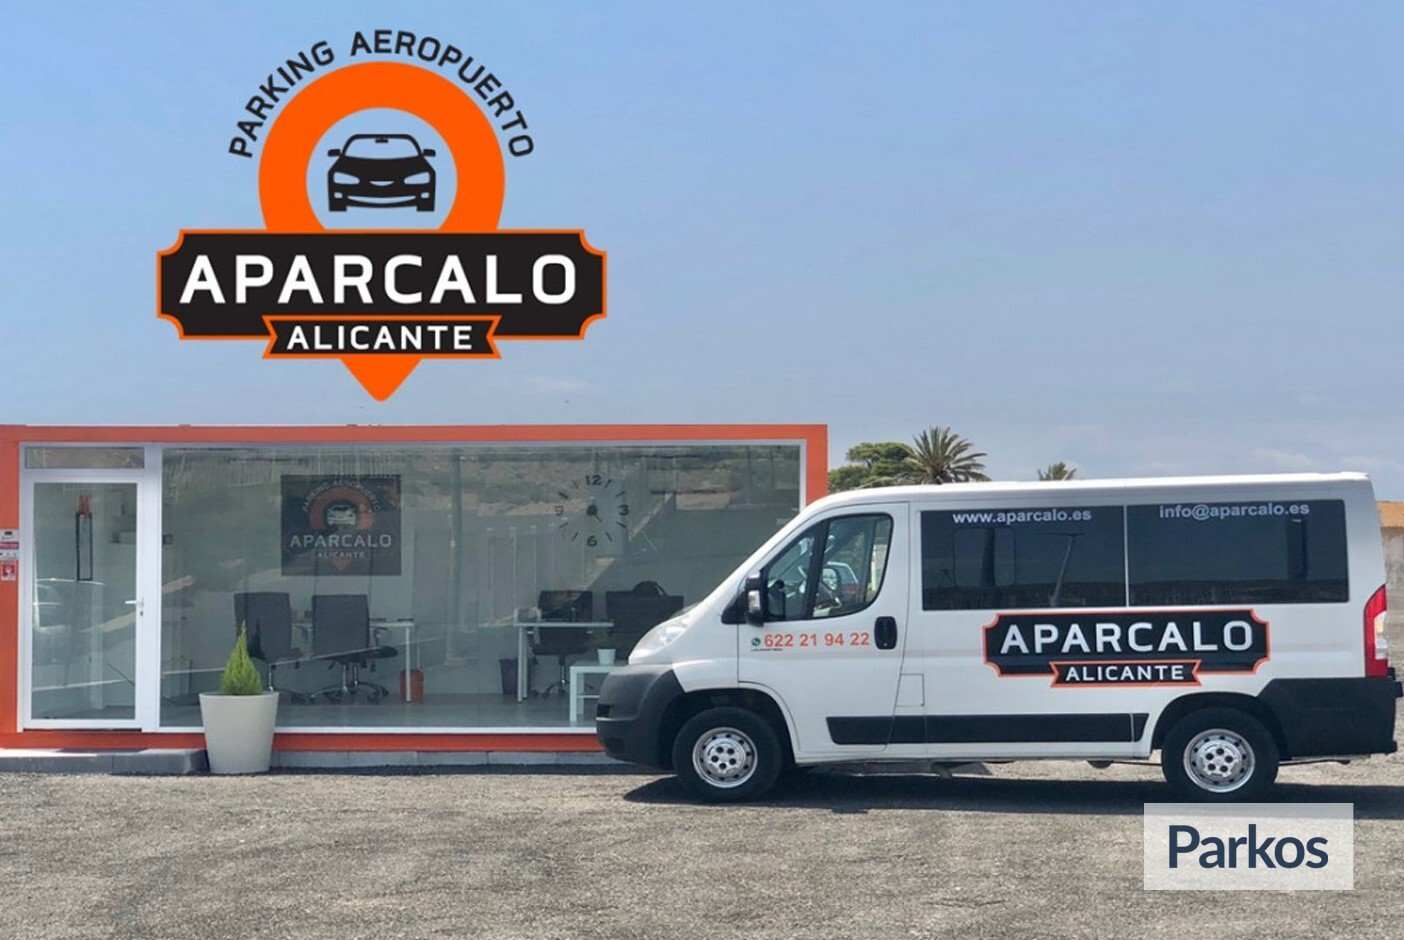 Aparcalo Alicante (pago online) - Parking Aeropuerto Alicante - picture 1